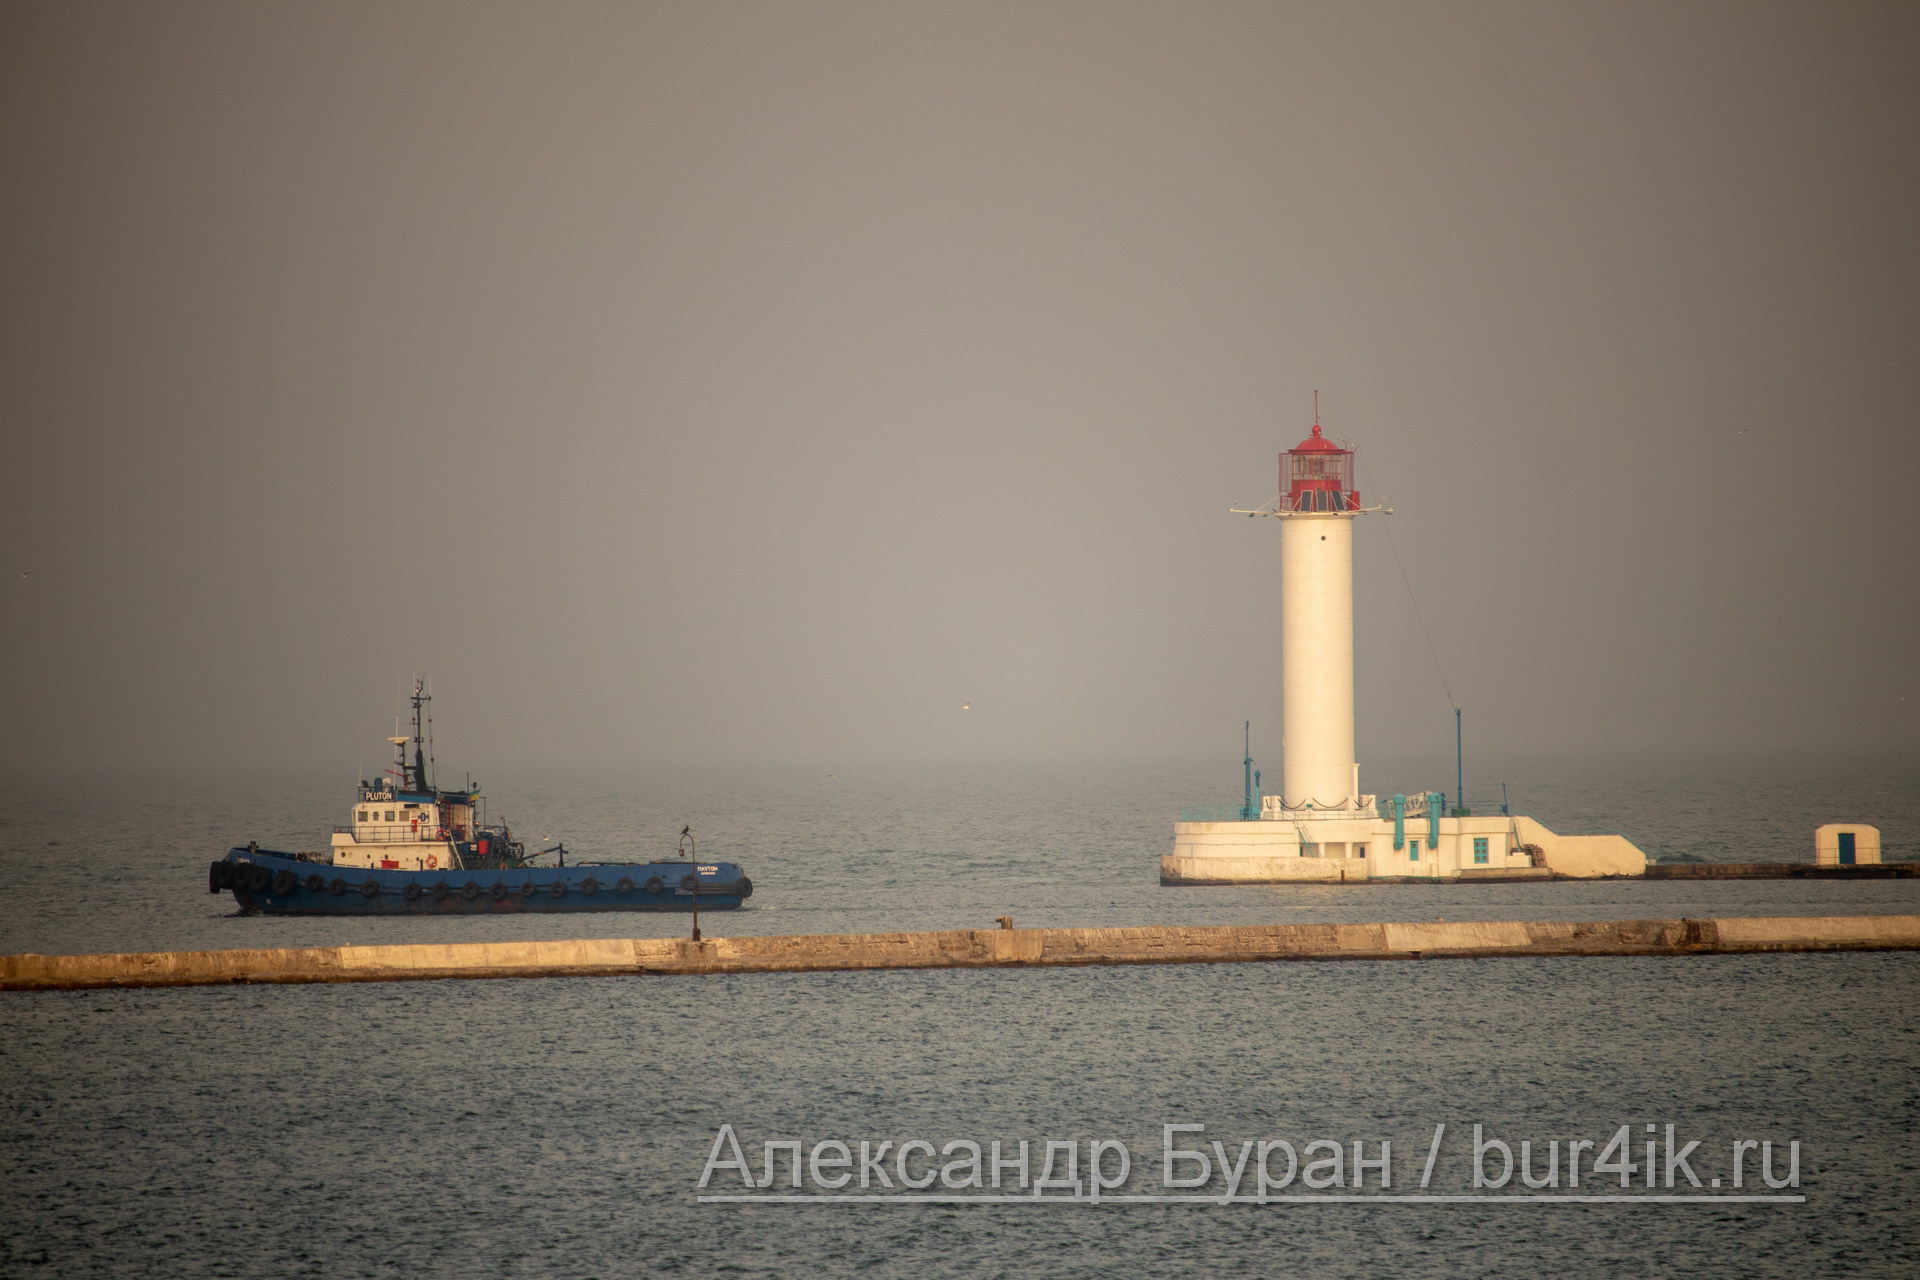 Баркас плывет в водах порта, мимо маяка на причале новый корабль - Украина, Одесса, 09,11,2019